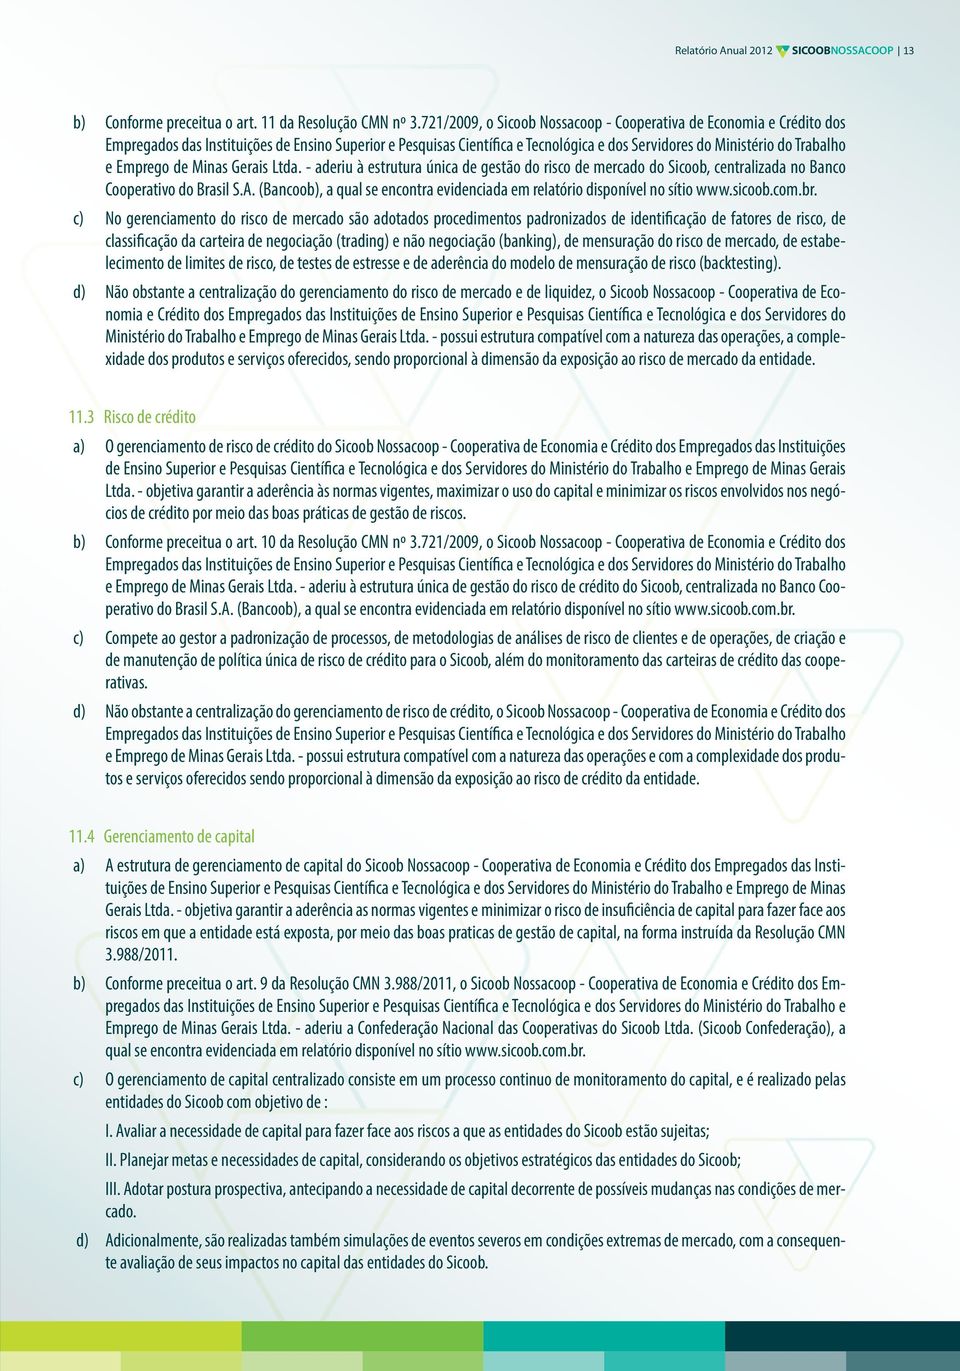 Emprego de Minas Gerais Ltda. - aderiu à estrutura única de gestão do risco de mercado do Sicoob, centralizada no Banco Cooperativo do Brasil S.A.